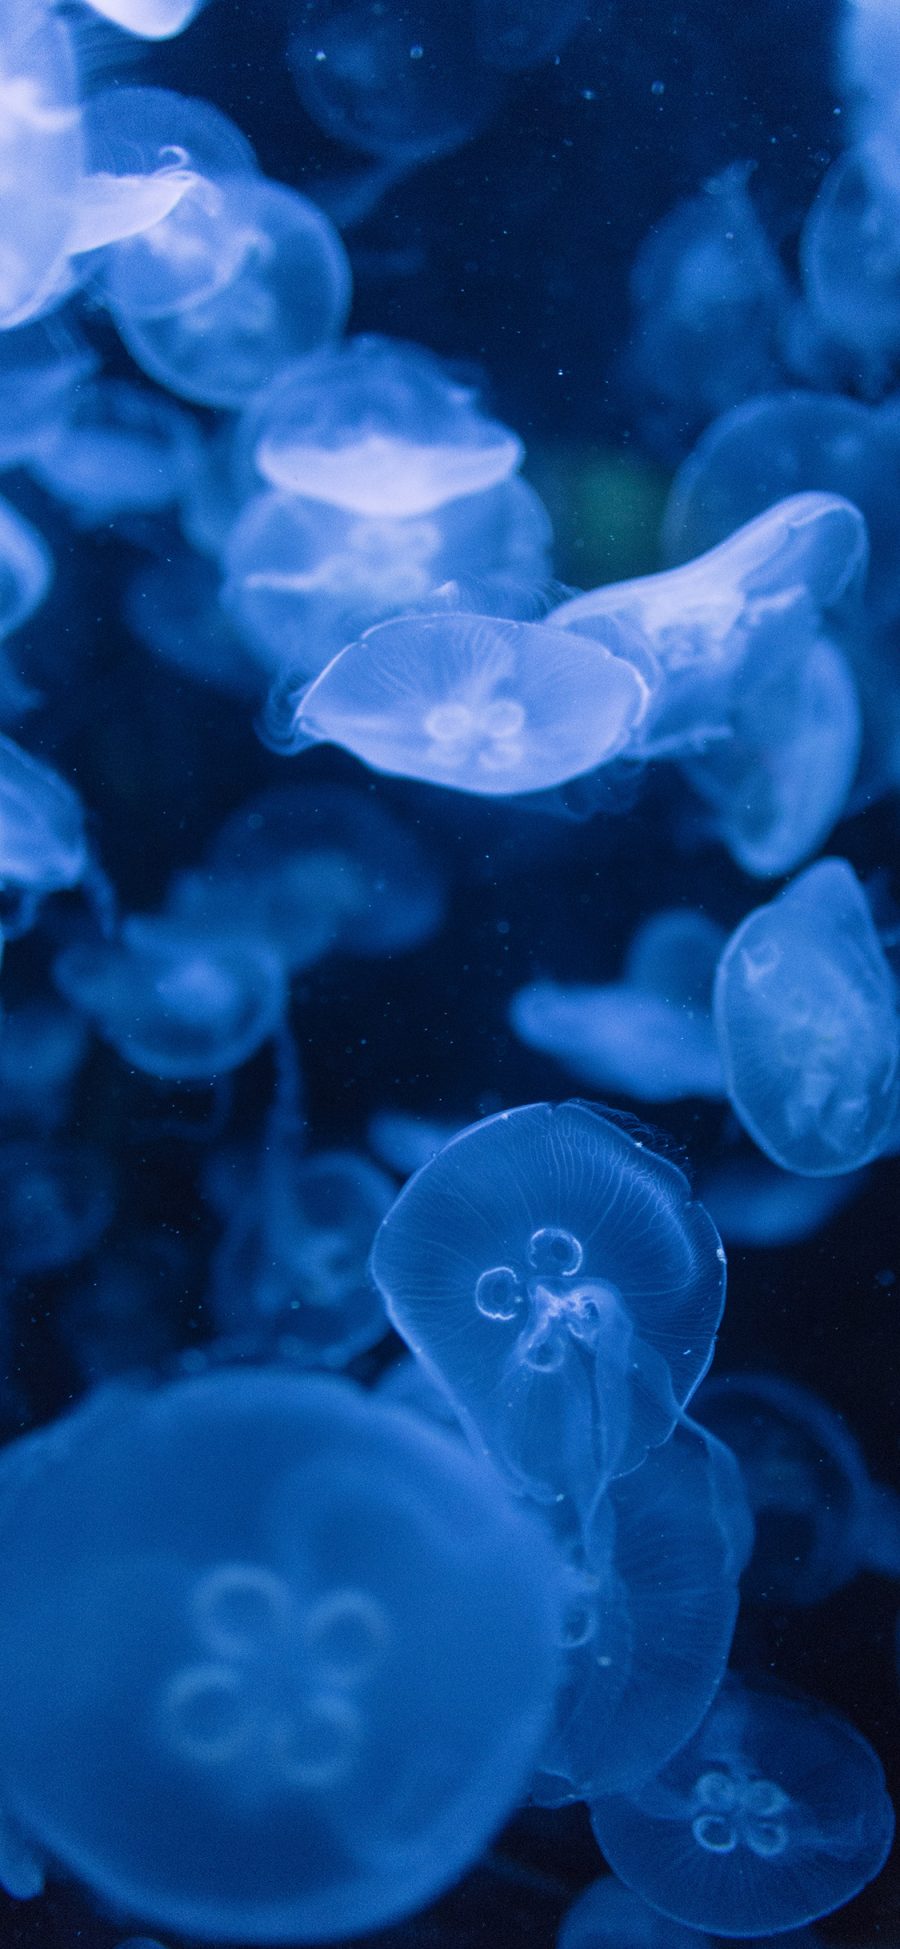 [2436×1125]浮游 海洋生物 水母 密集 苹果手机壁纸图片